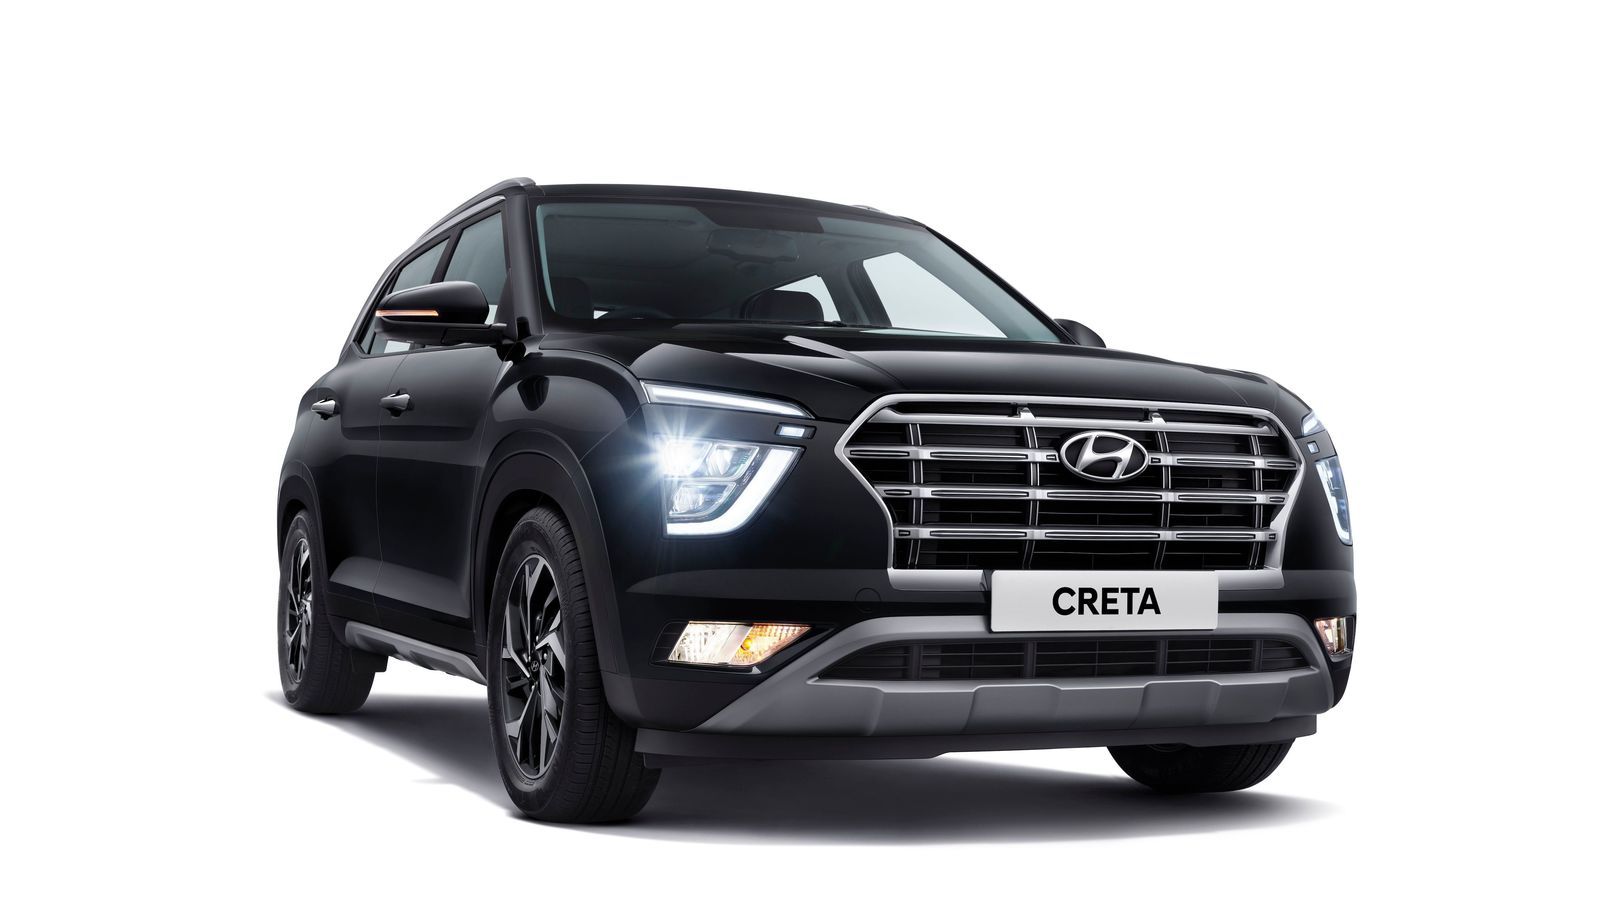 Creta - Hyundai Creta Price (GST Rates), Review, Specs, Interiors, Photos |  ET Auto